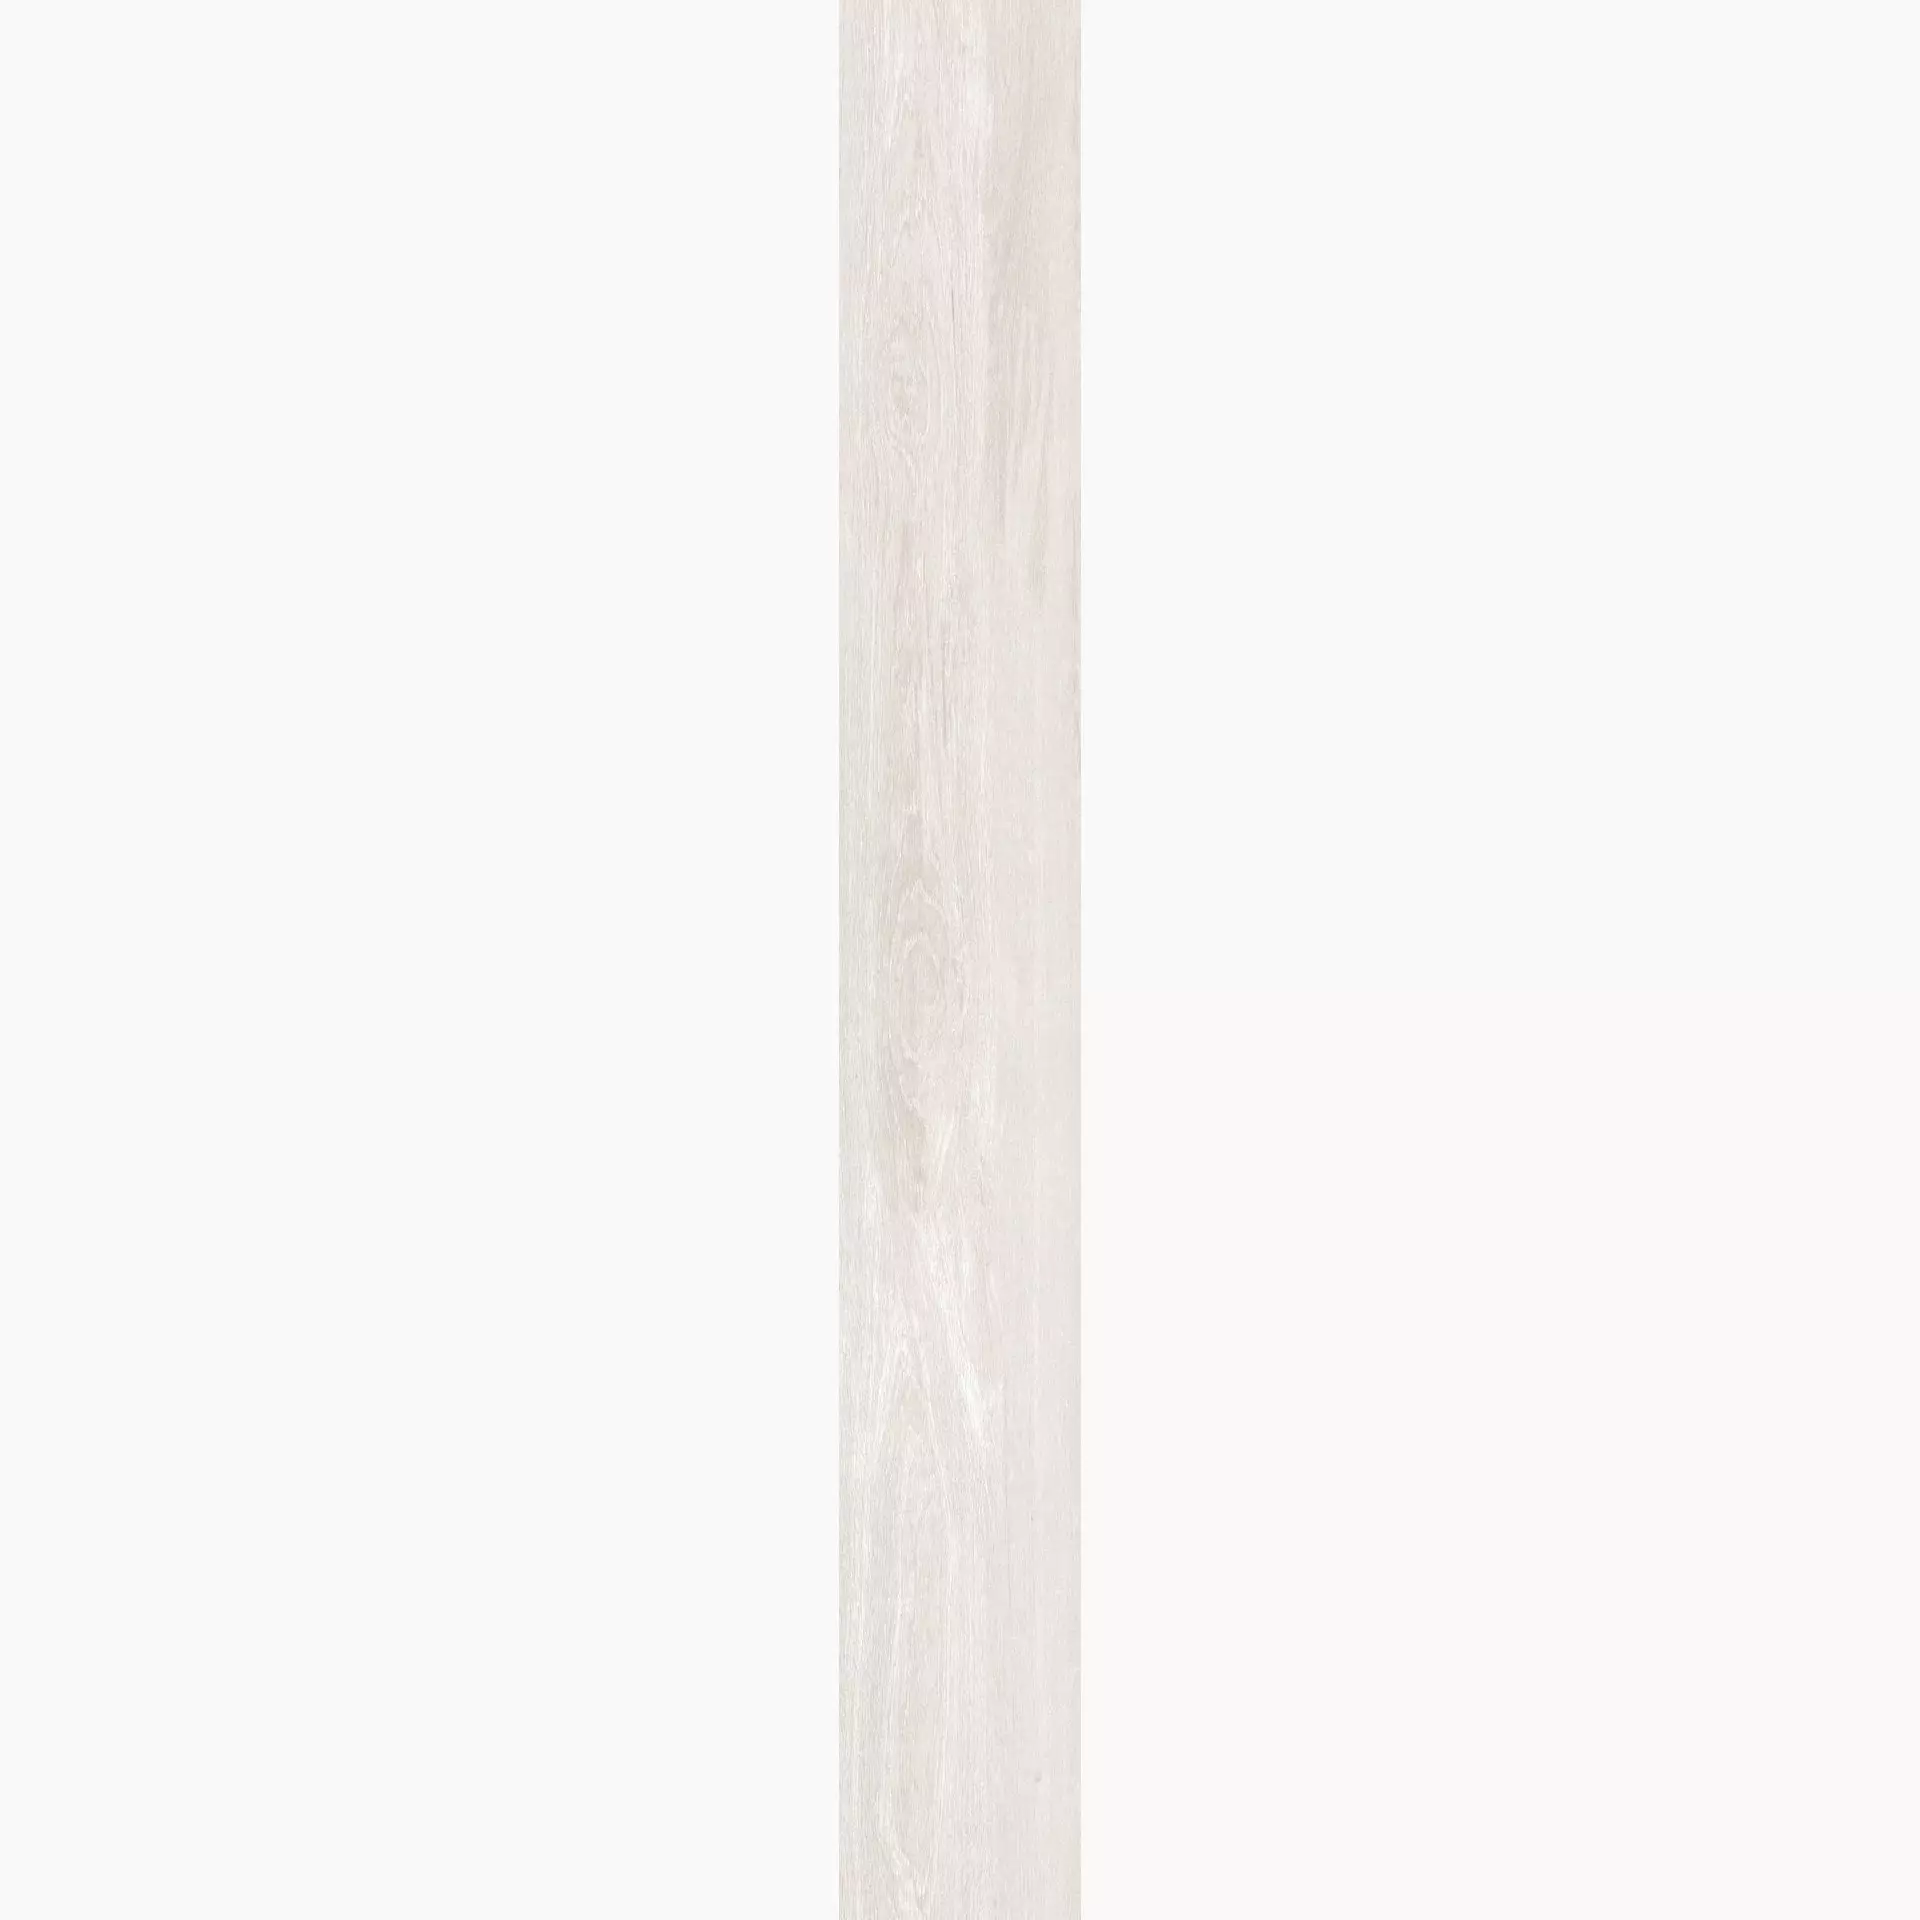 Casalgrande Planks Bianco Naturale – Matt 10930082 30x240cm rectified 6mm